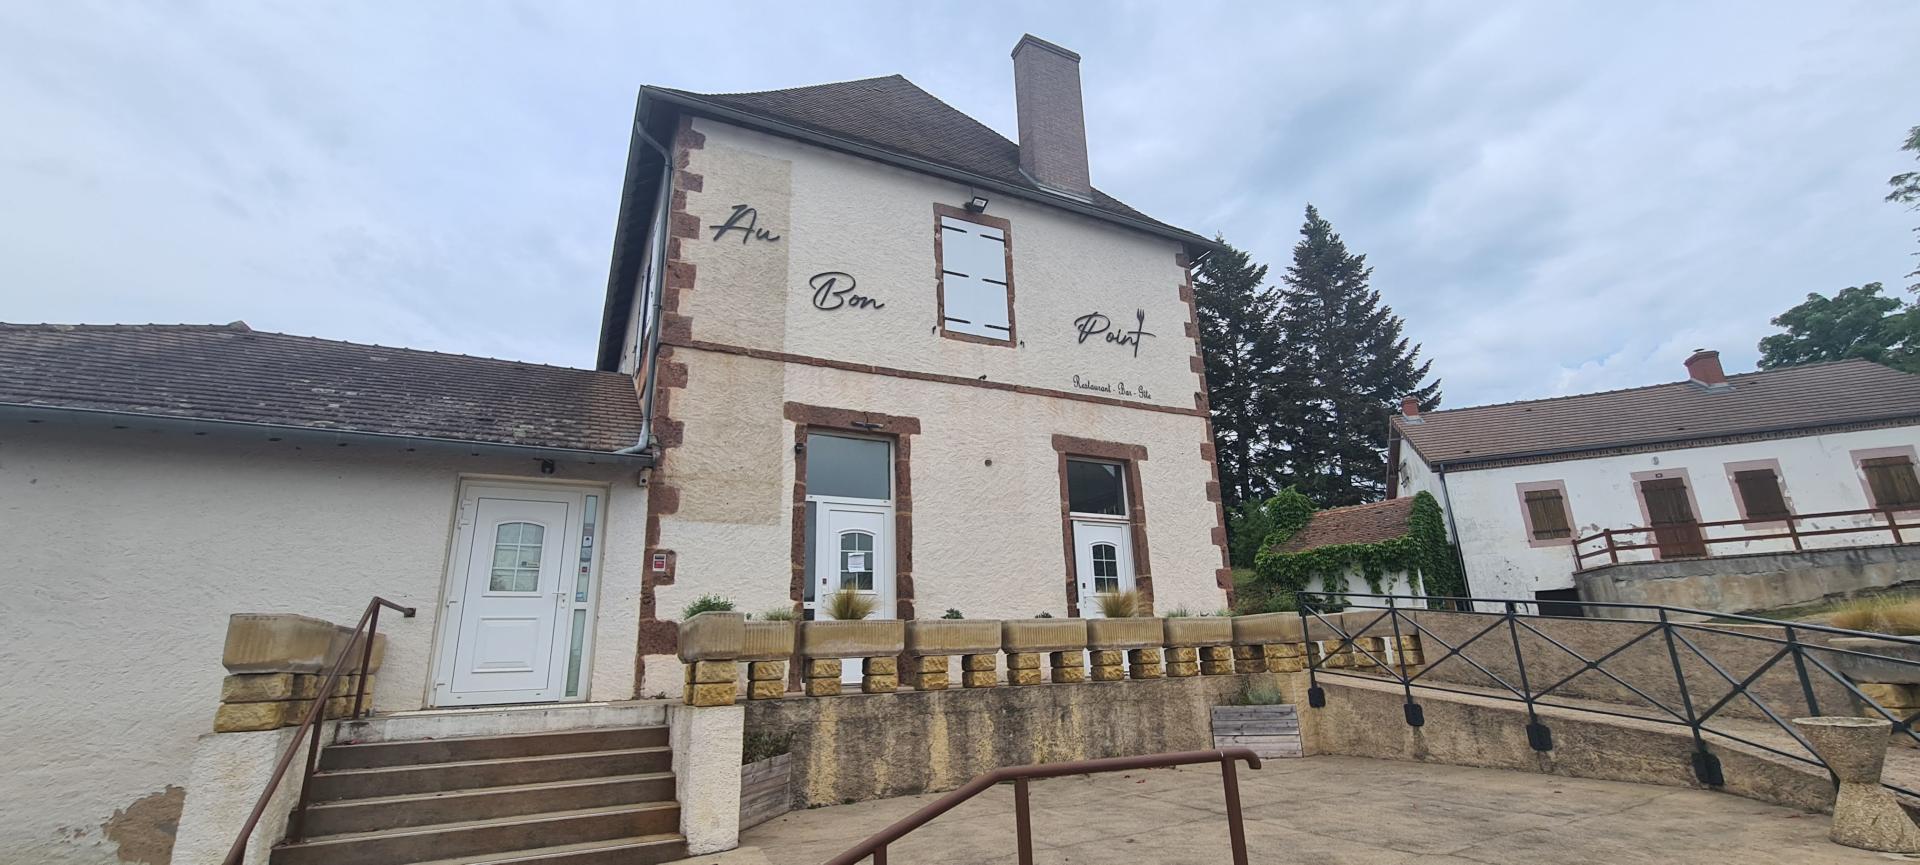 Photo du restaurant de Perrigny-sur-Loire